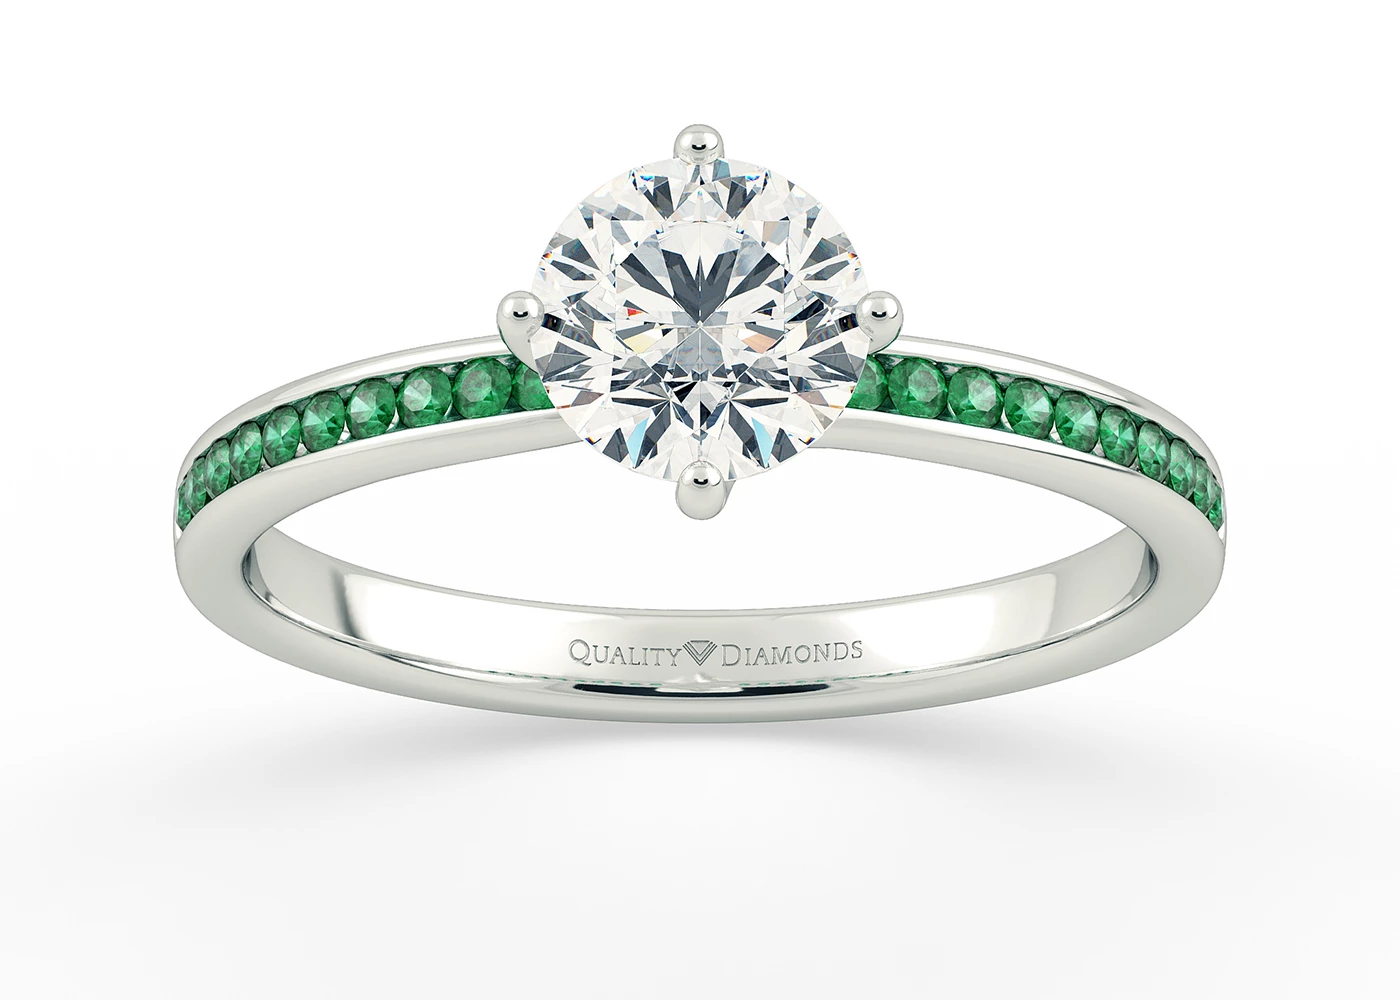 Emerald Set Round Brilliant Abbraccio Diamond Ring in 18K White Gold